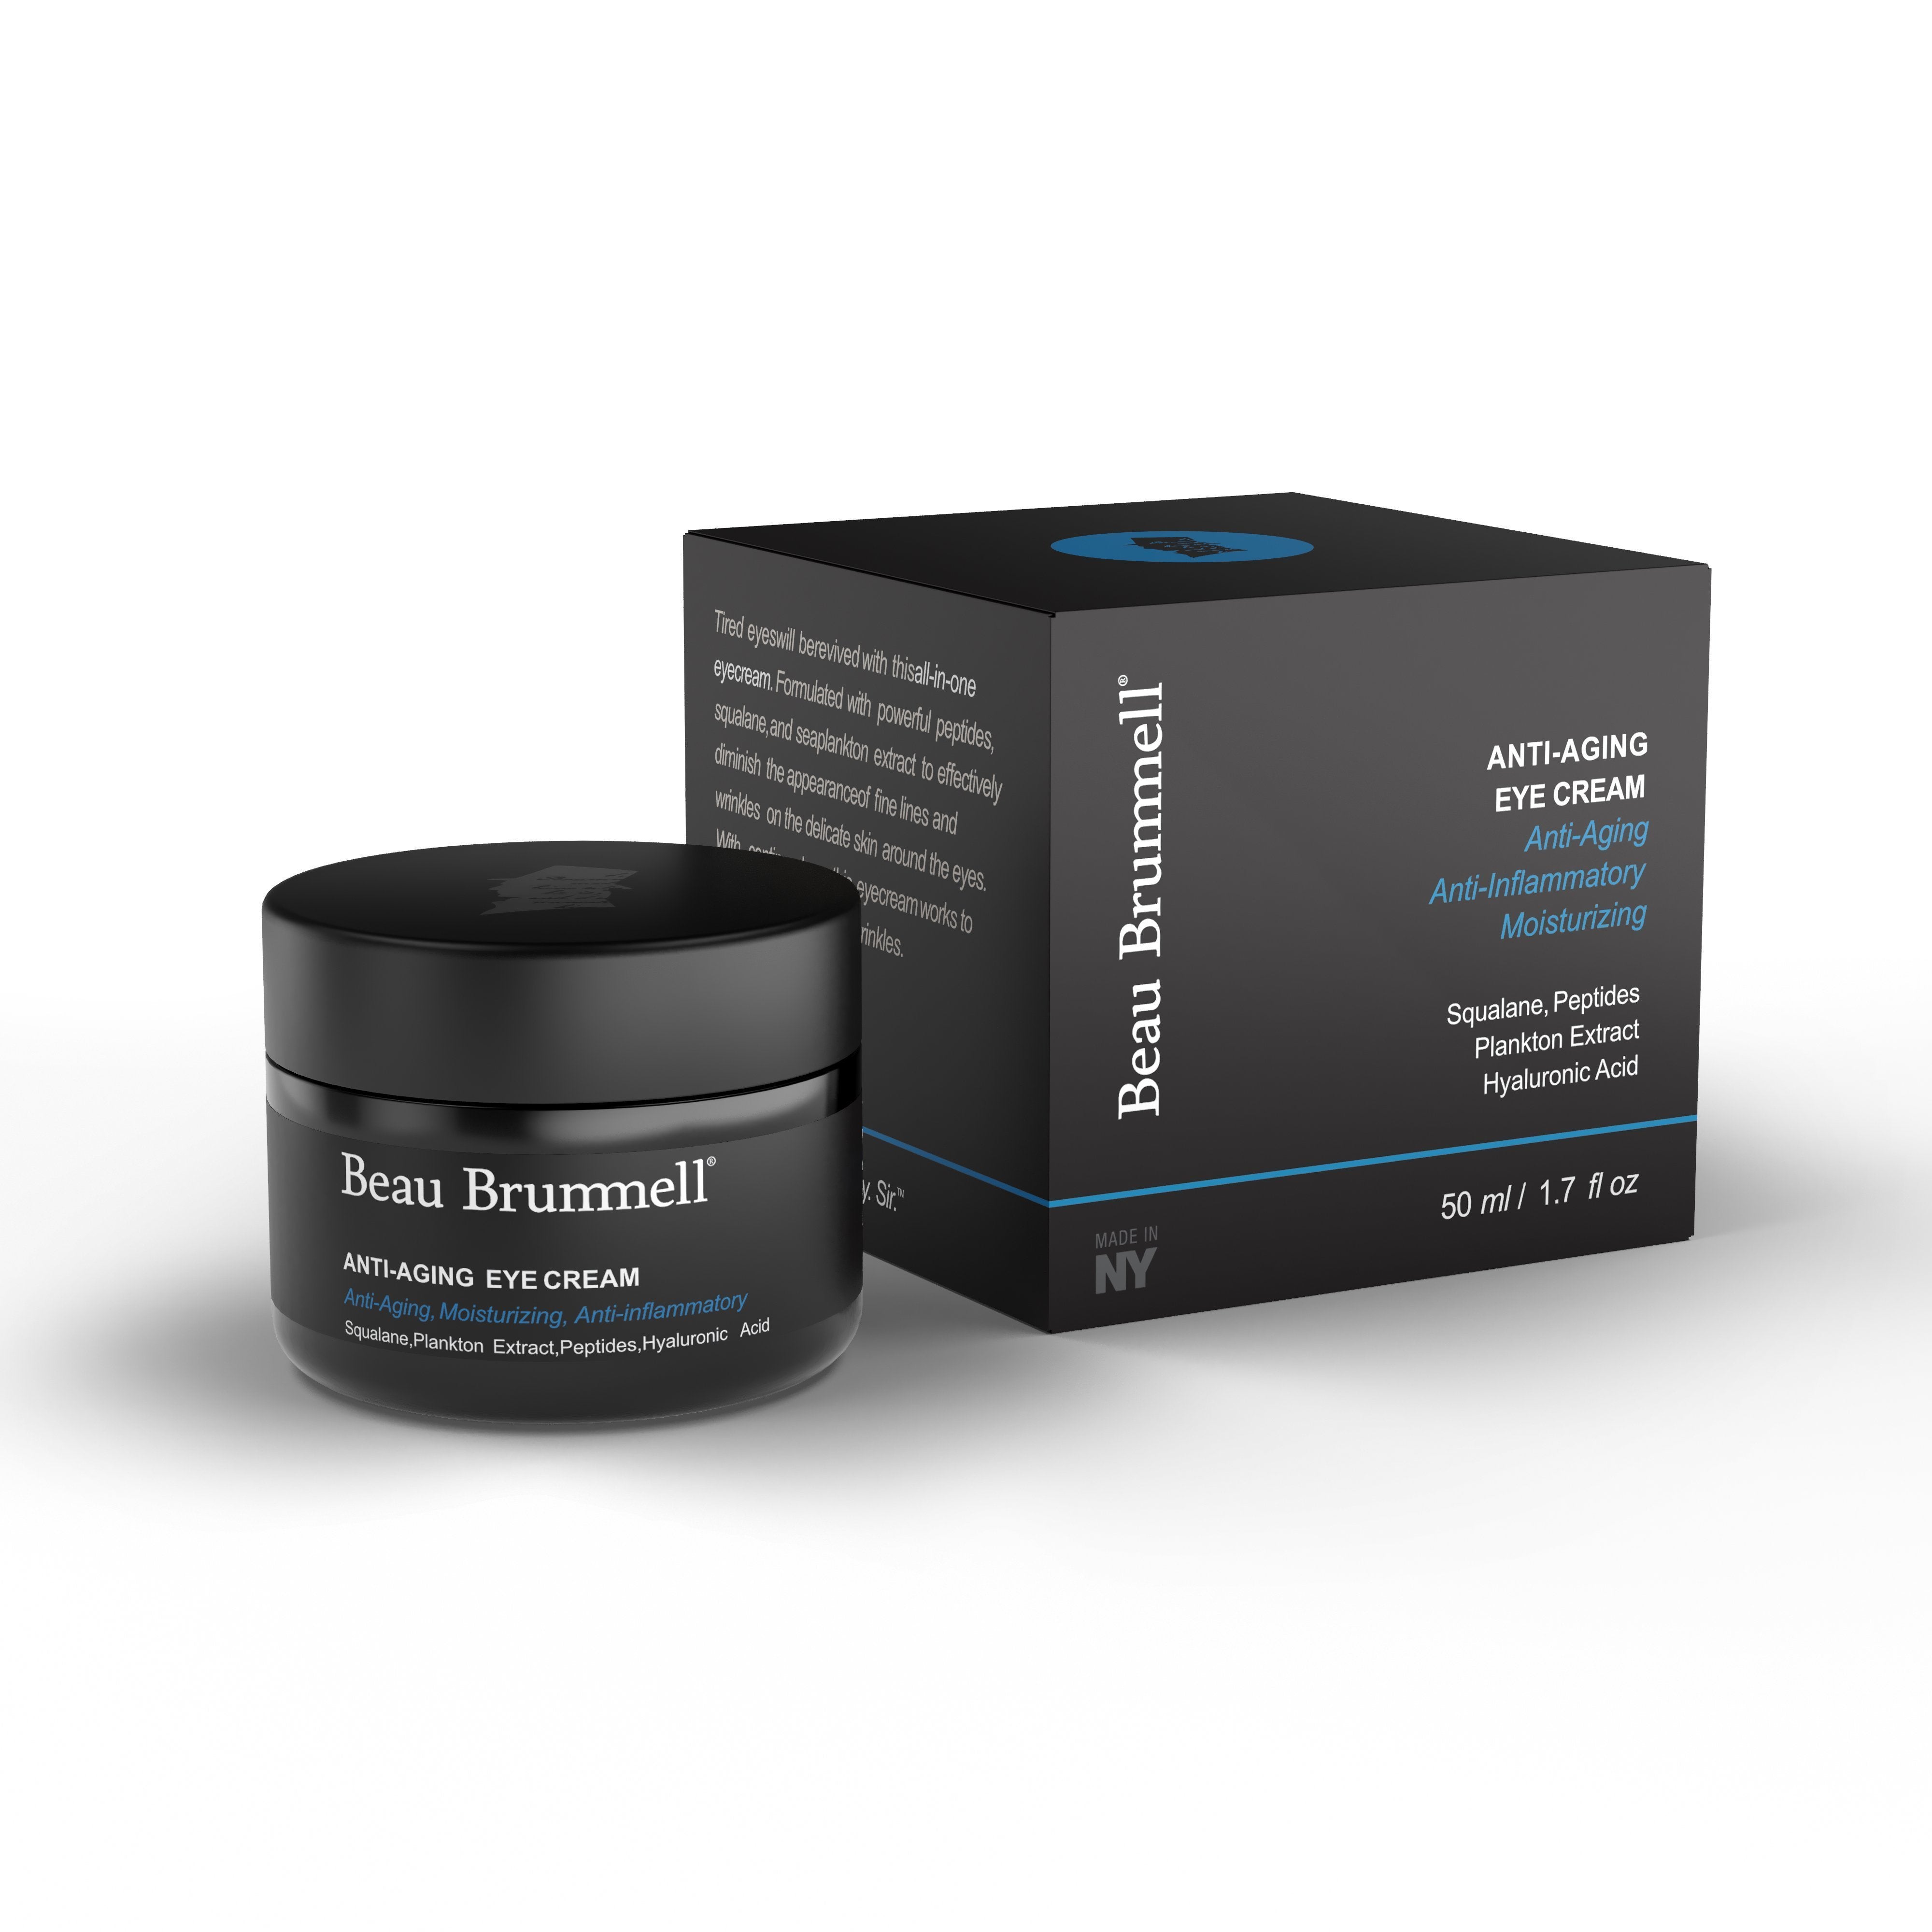 Beau Brummell Skincare Anti-aging Eye Cream